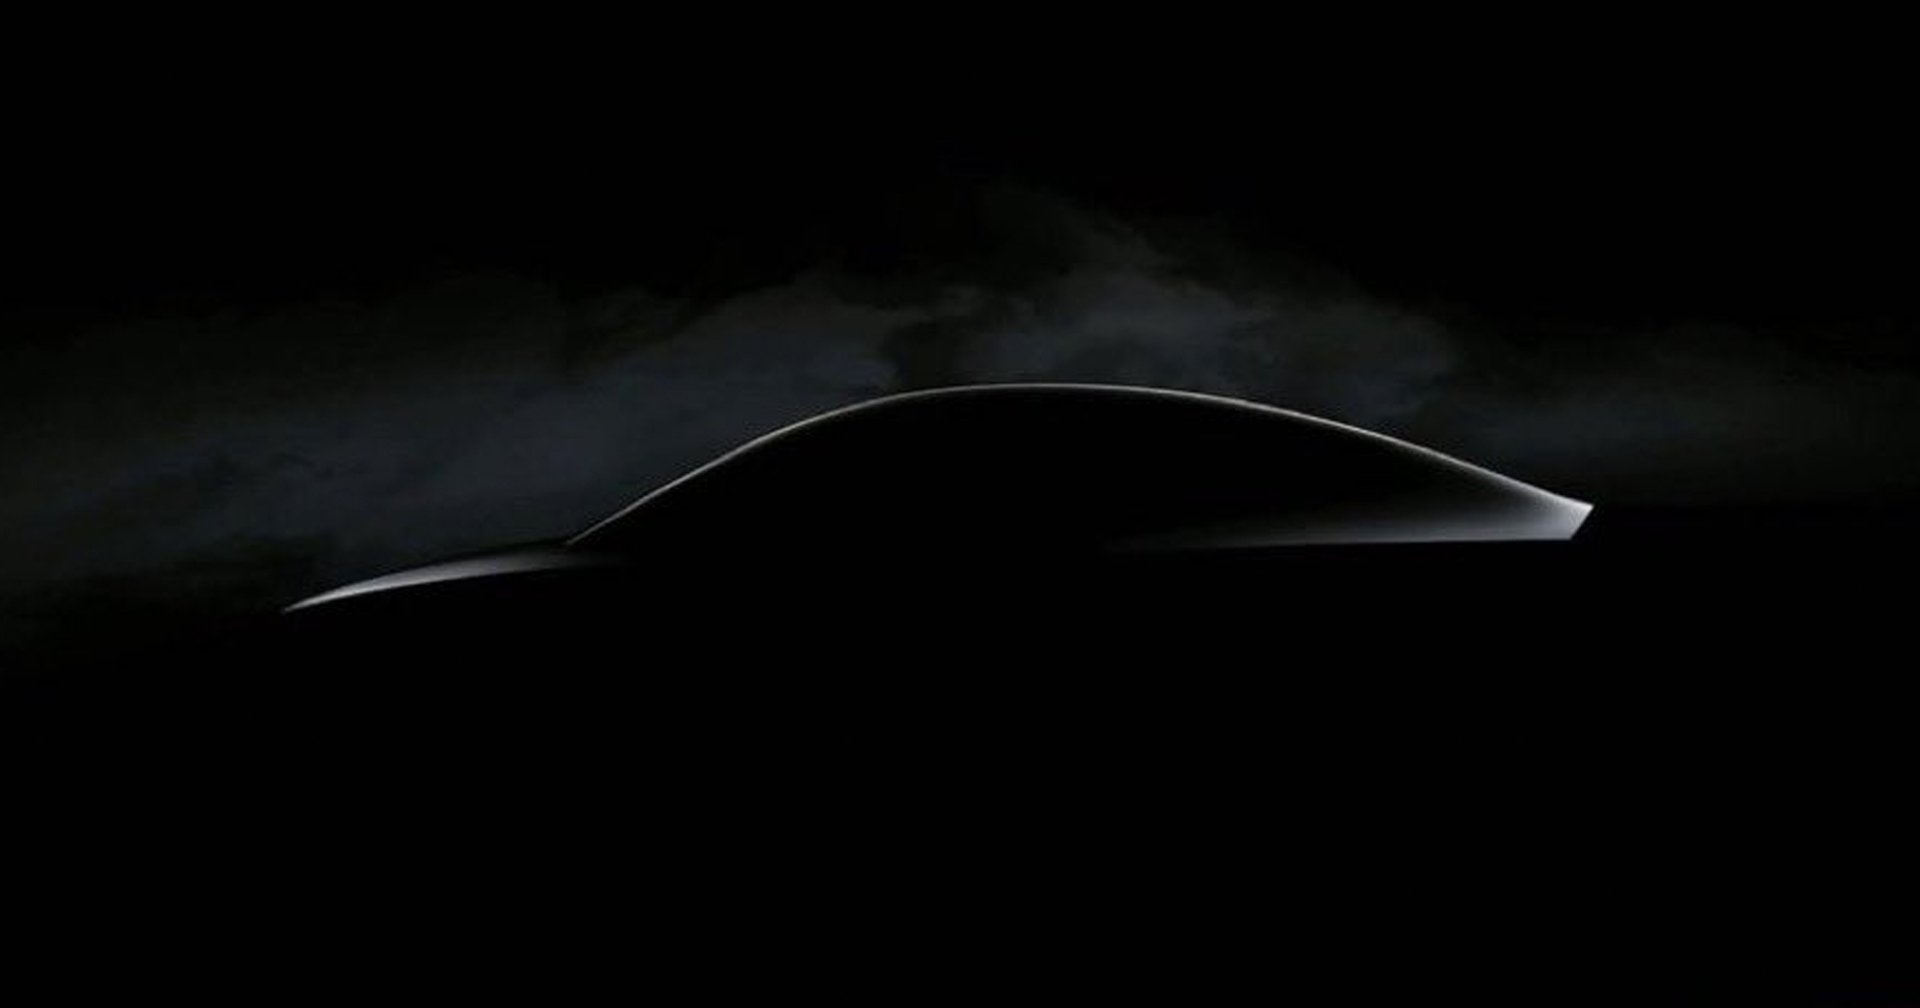 Tesla กางโปรเจกต์ใหม่ Redwood รถคอมแพค SUV ไฟฟ้า ราคาไม่ถึง 9 แสนบาท ผลิตได้ปี 2025